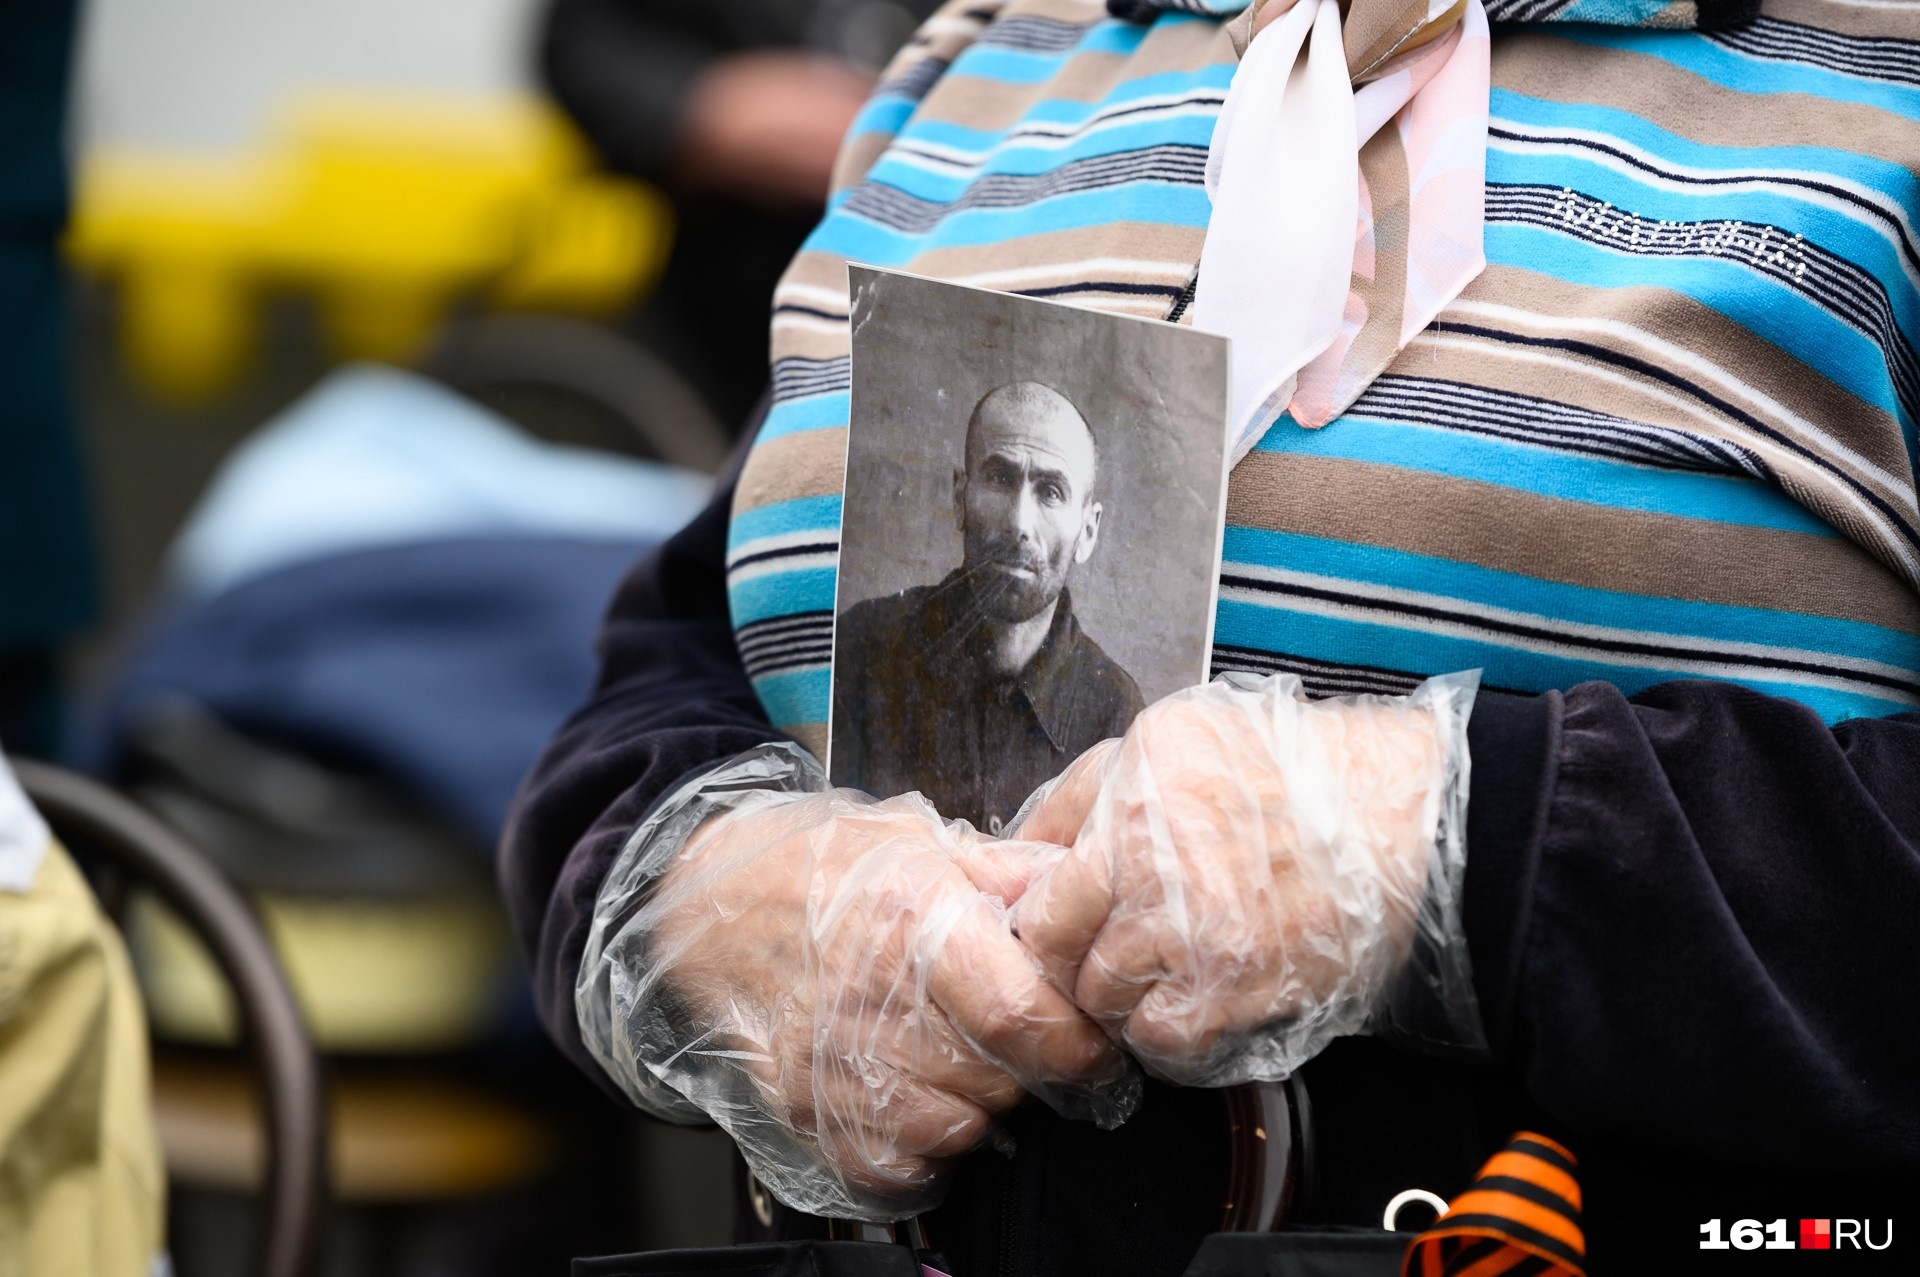 Нужно запомнить, как приходилось в перчатках держать фото погибшего в войне родственника